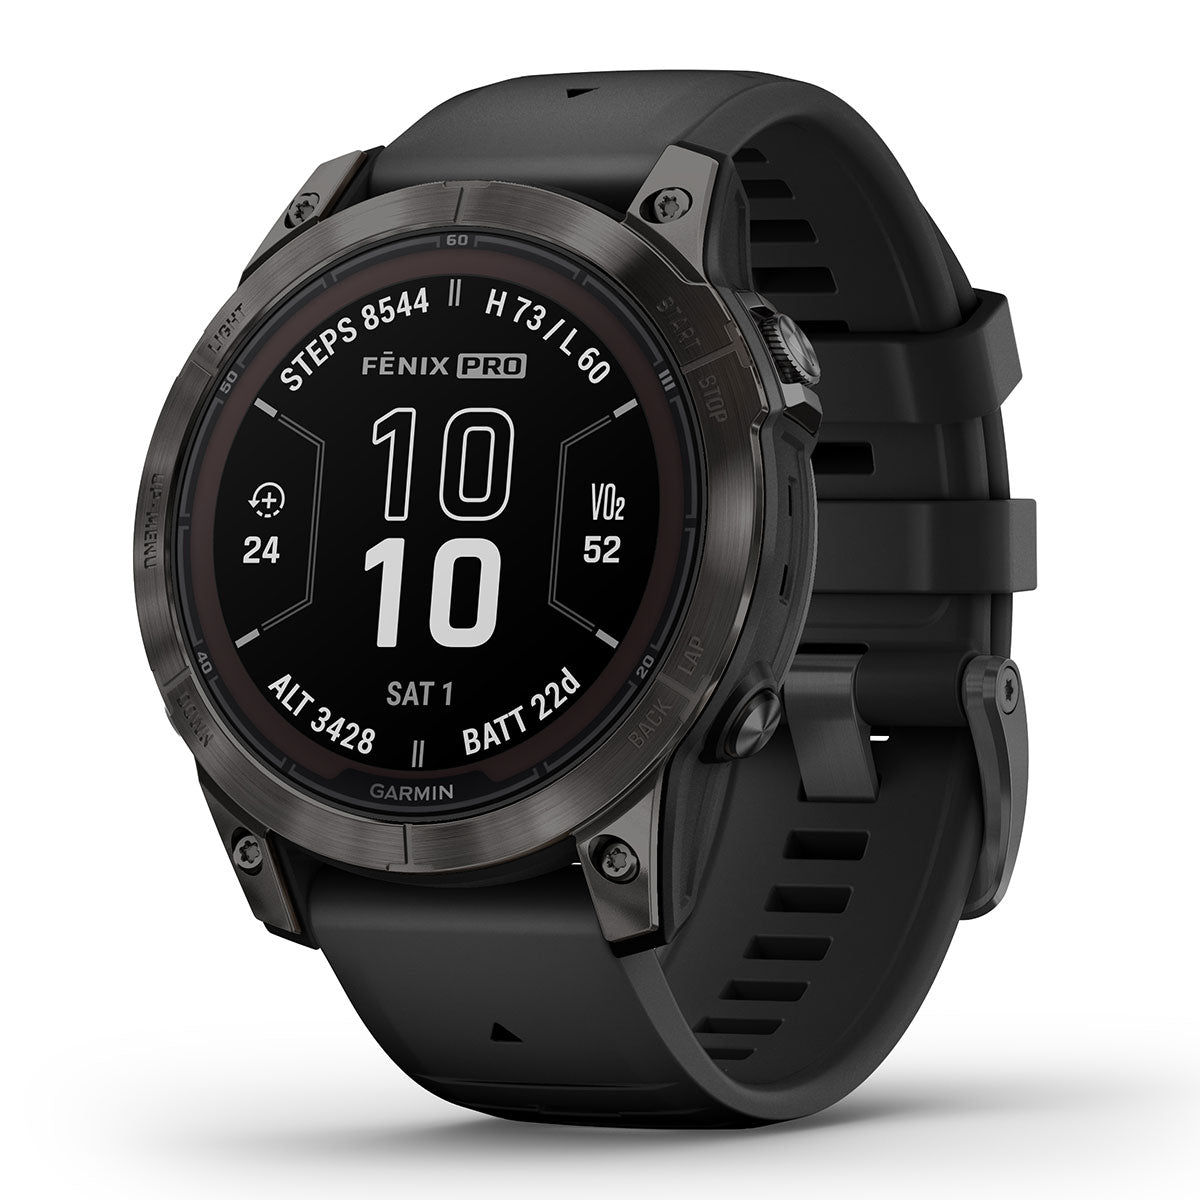 Garmin fēnix 7 GPS Watch - Silver/Graphite for sale online